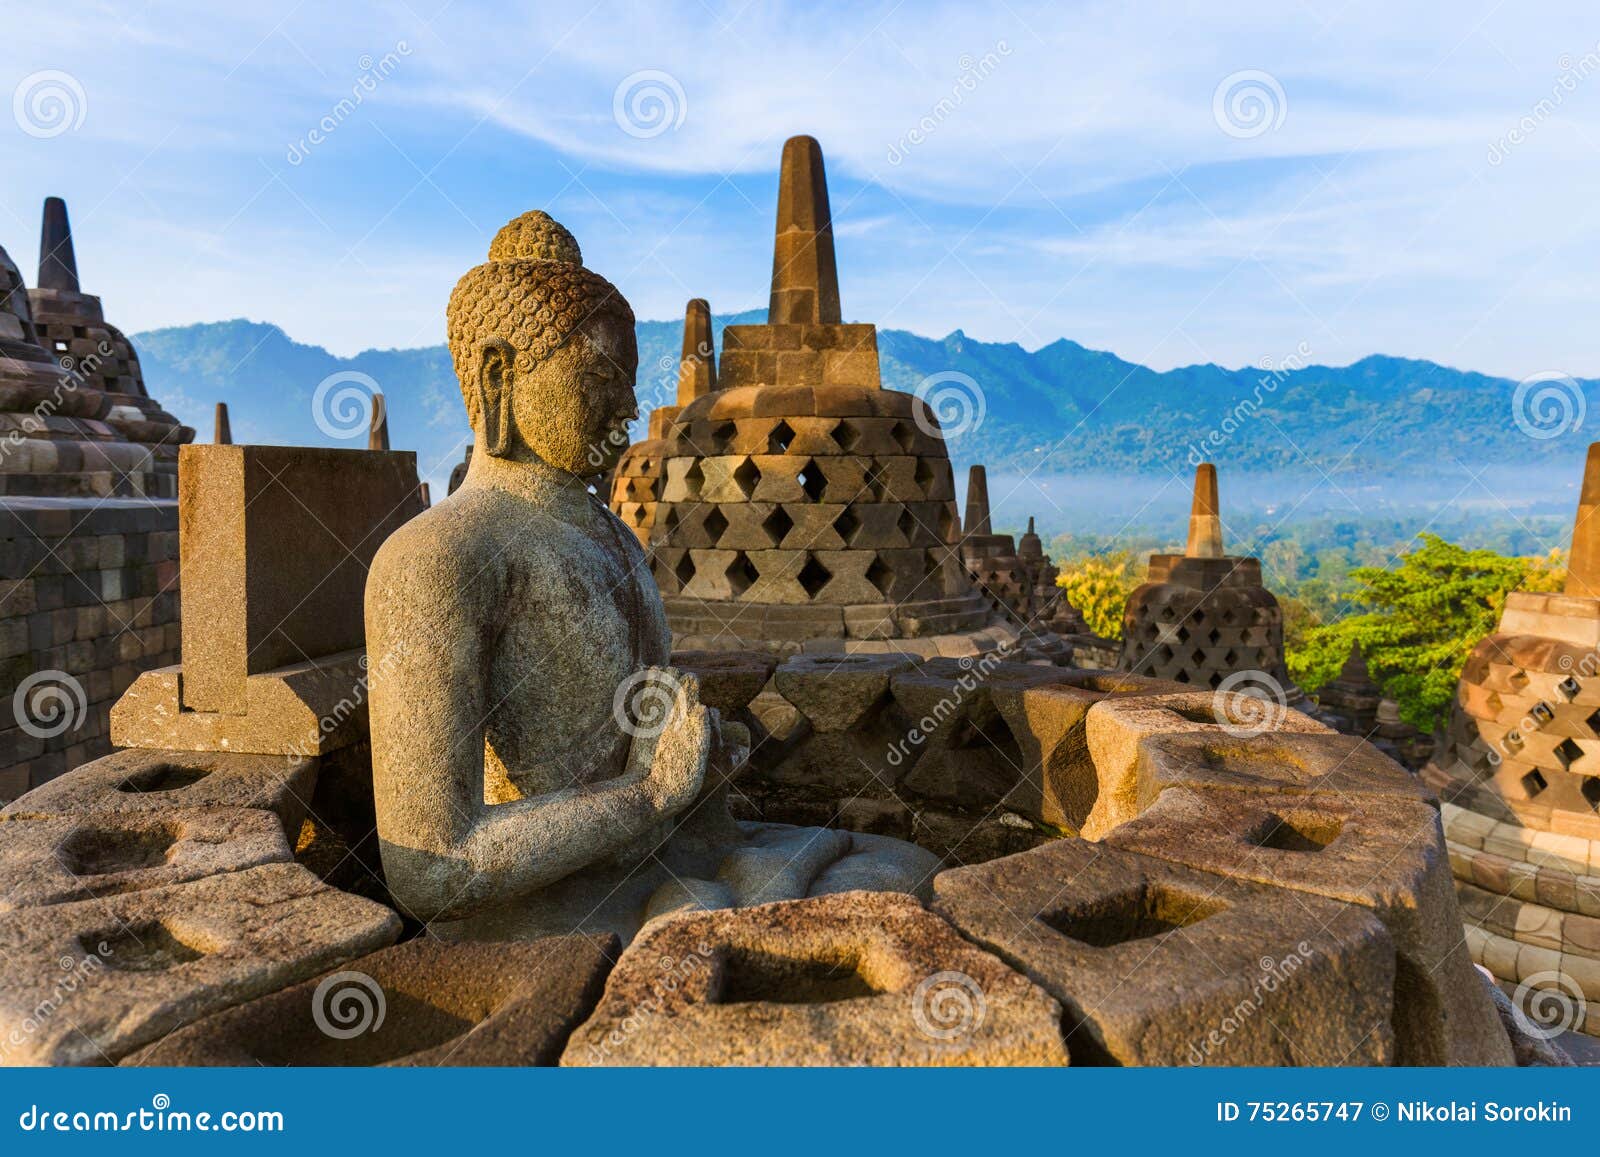 borobudur buddist temple - island java indonesia